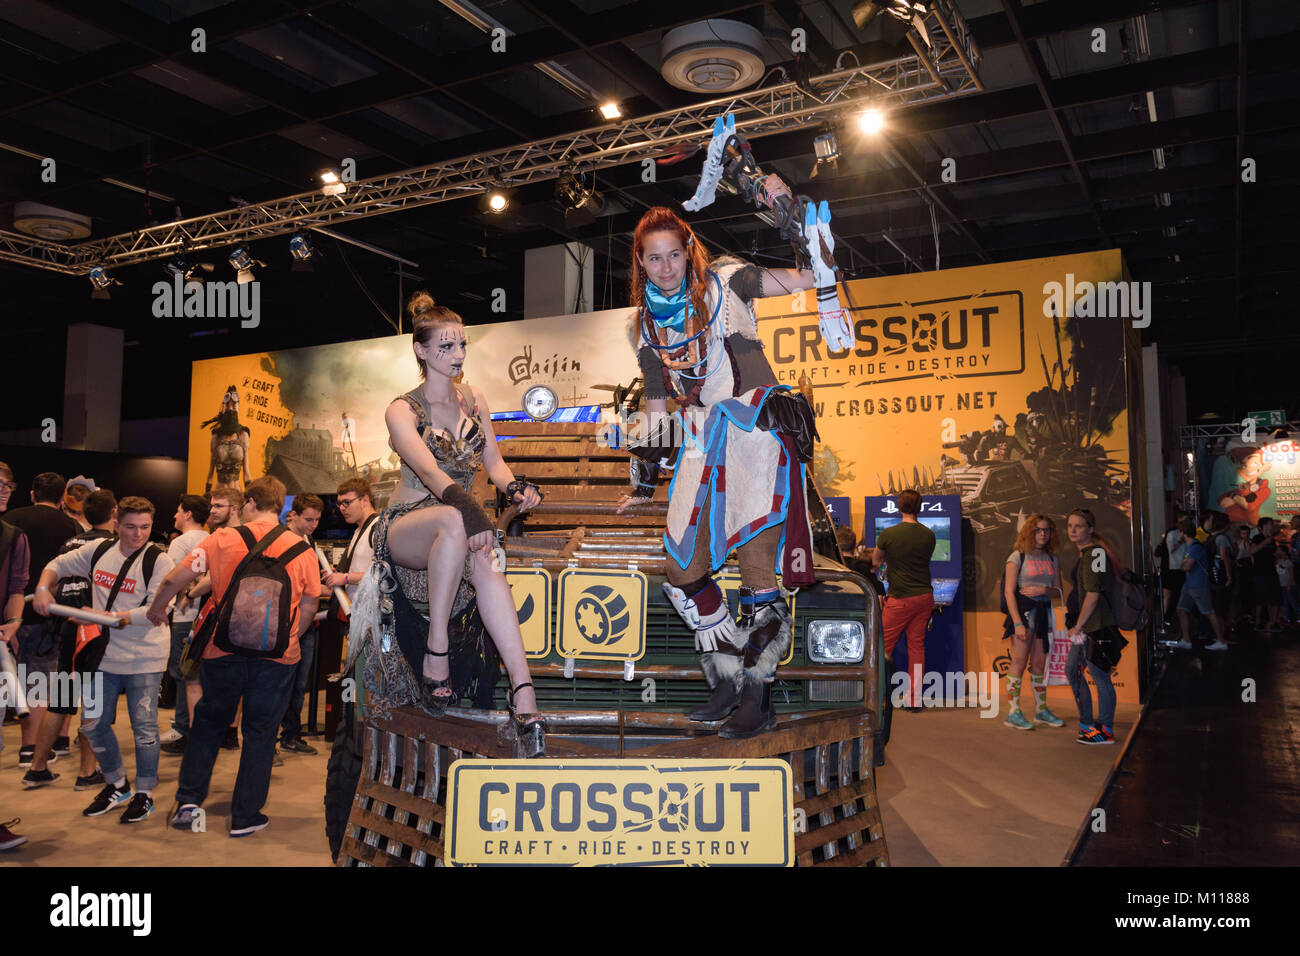 Colonia, Germania - 24 agosto 2017: due cosplayers pongono allo stand del gioco Crossout a Gamescome 2017. Gamescom è un commercio equo per i video giochi. Foto Stock